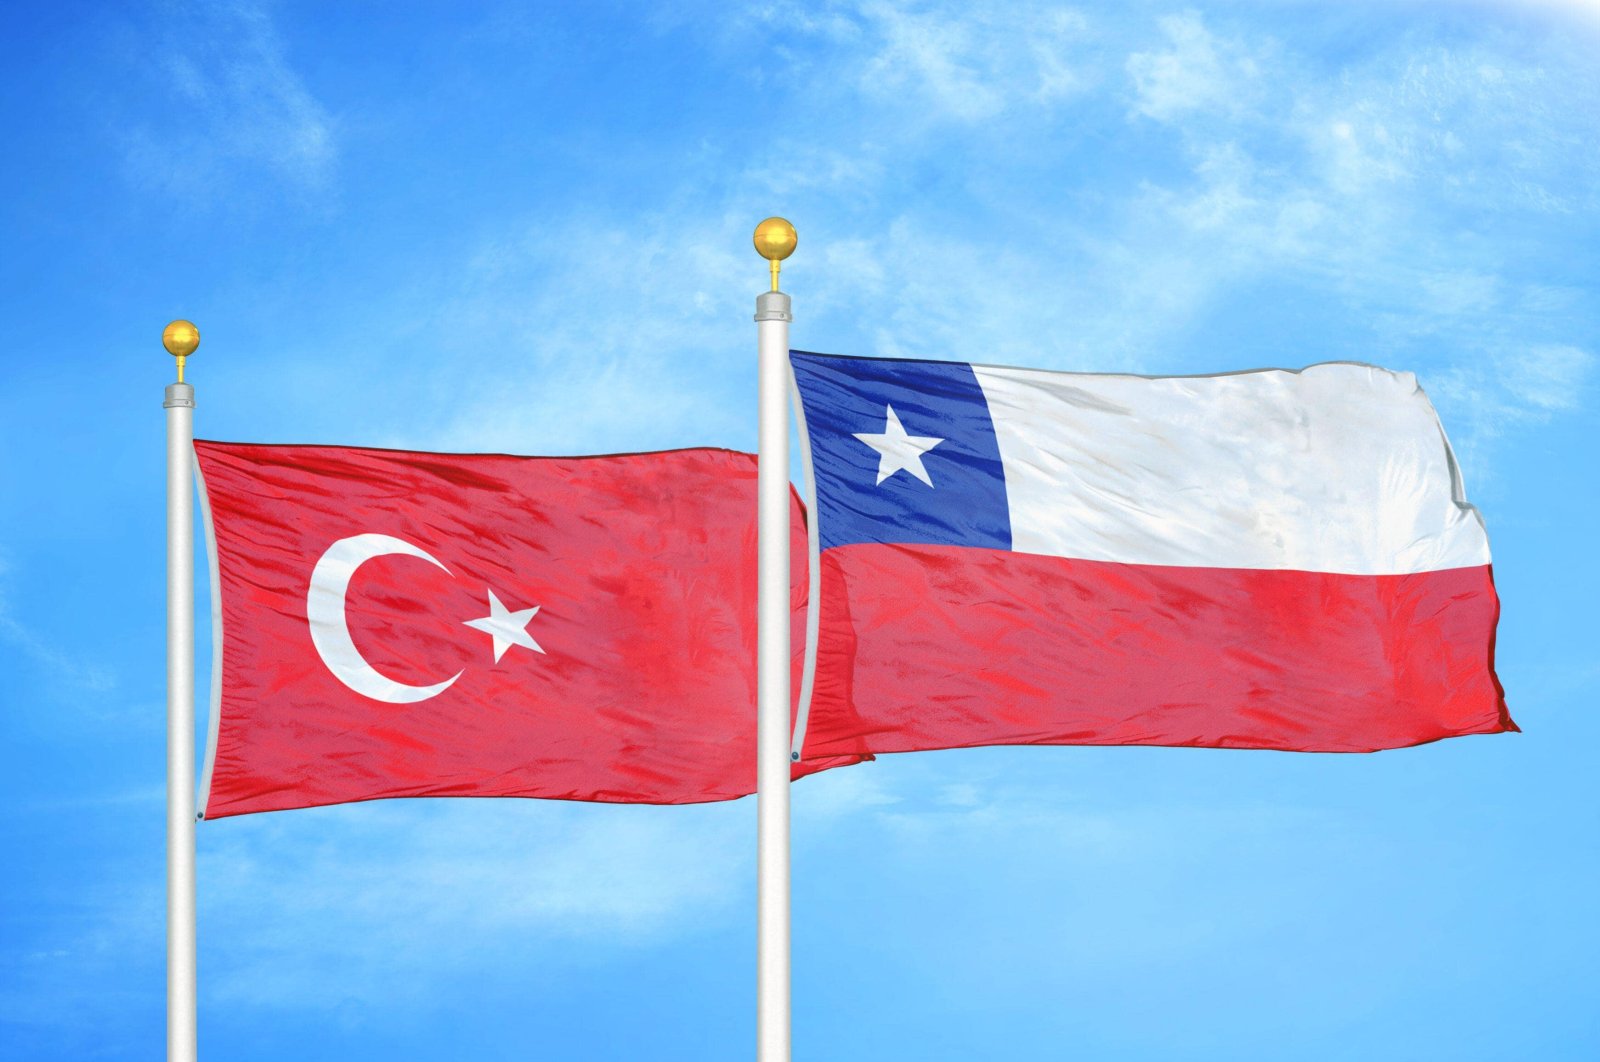 Chile latinoamericano abre nueva embajada en capital turca